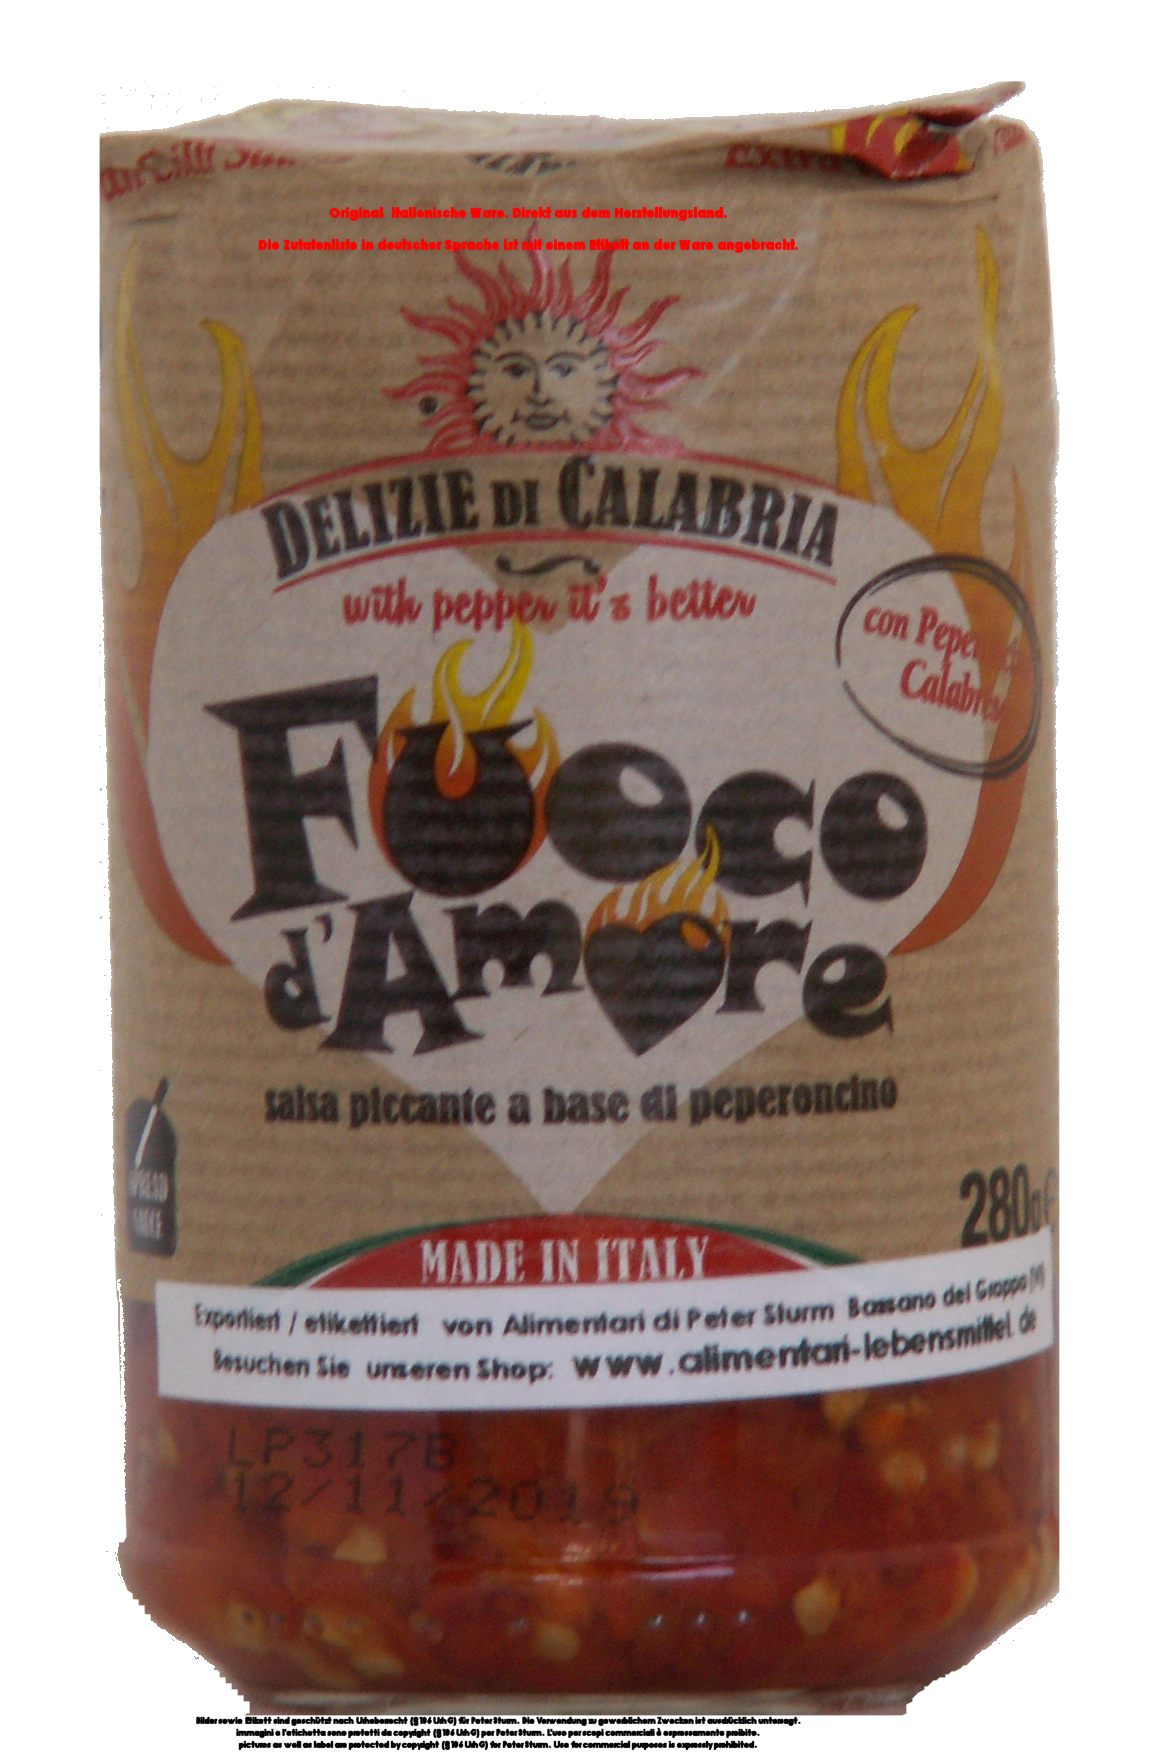 Delizie di Calabria Fuoco d`Amore Salsa piccante a base di peperoncino 280g /  Sauce mit Chili sehr scharf.